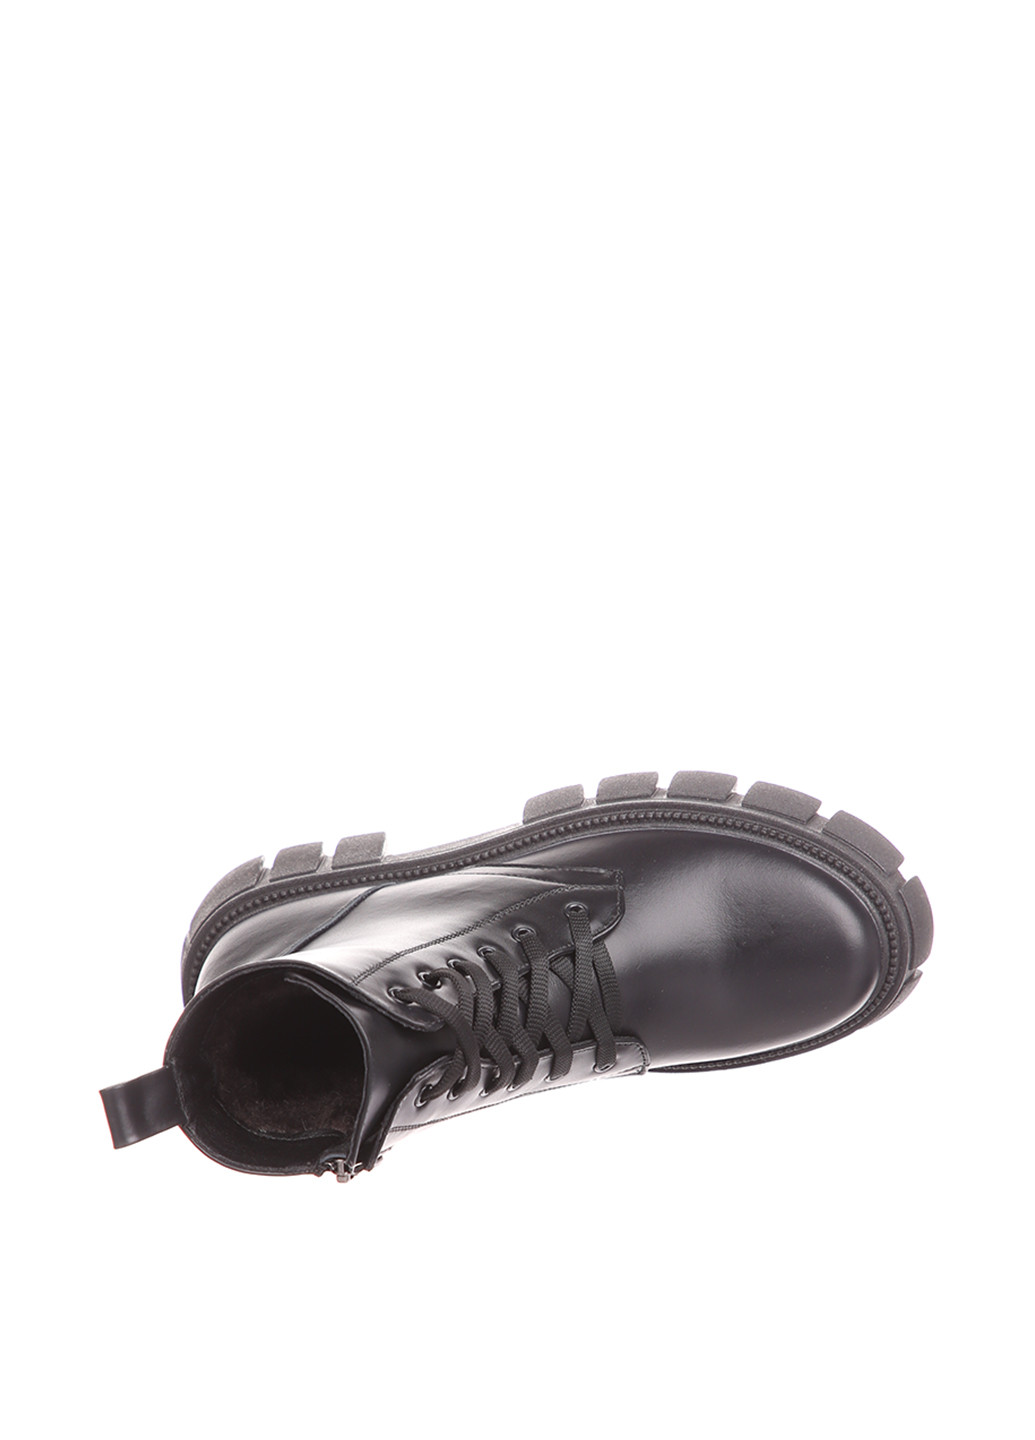 Зимние ботинки Ventaja со шнуровкой, на тракторной подошве